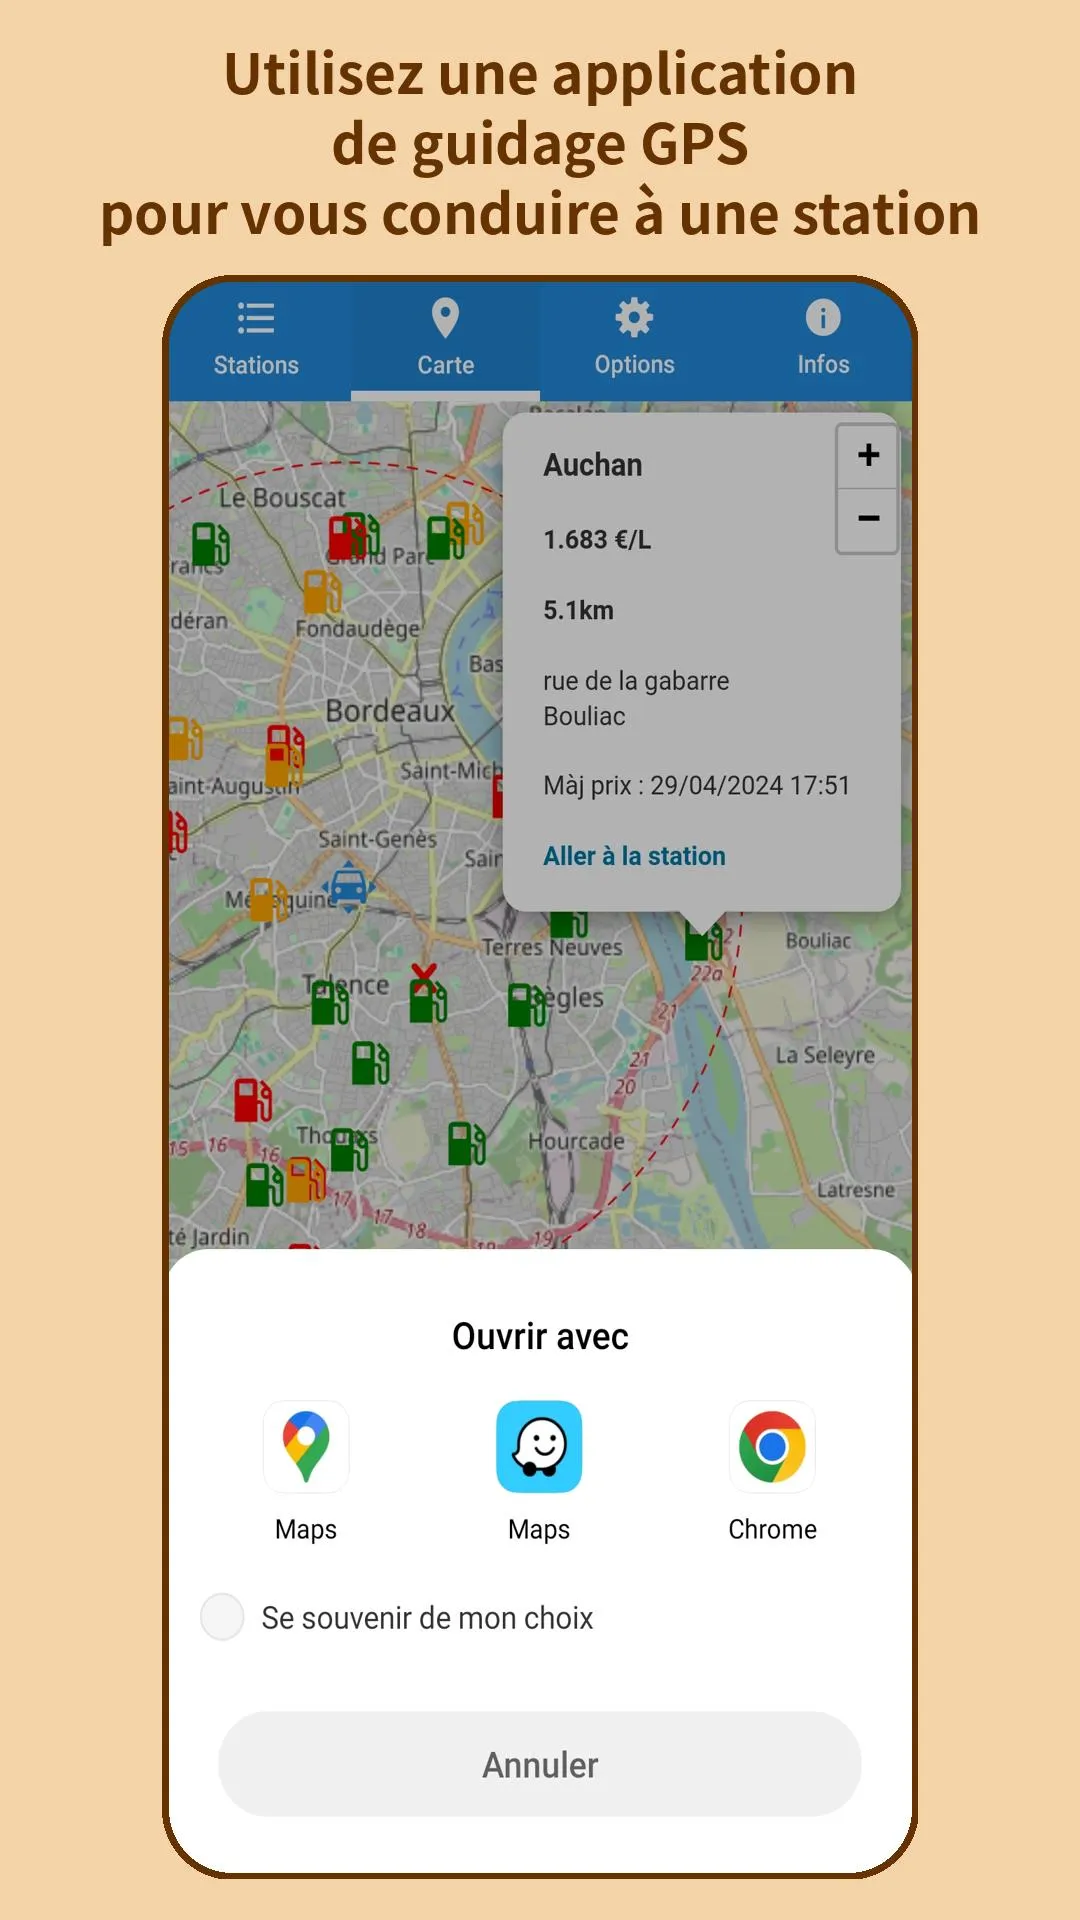 Utilisez une application de guidage GPS pour vous conduire à une station